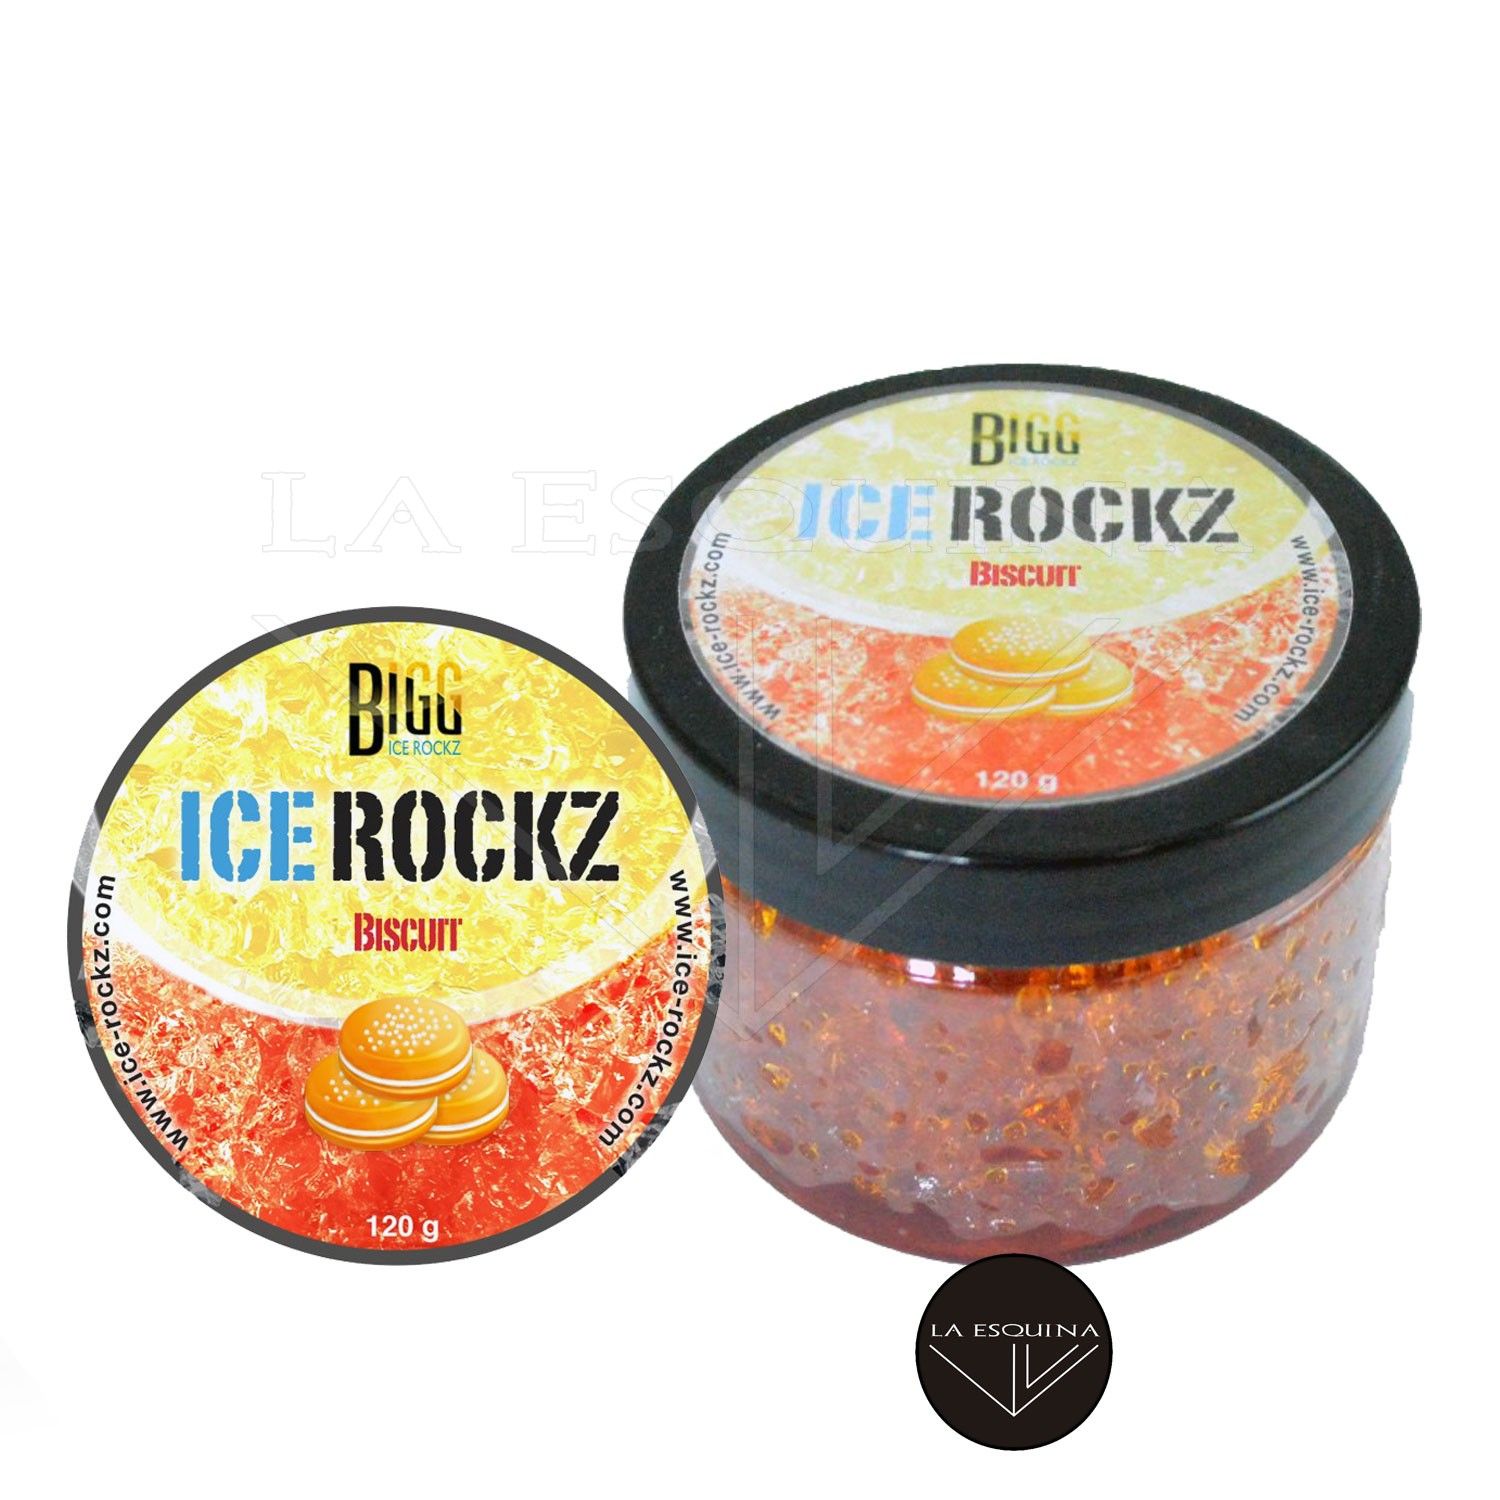 Gel Rock de Cachimba BIGG ICE ROCKZ – 120 g. – Biscuit